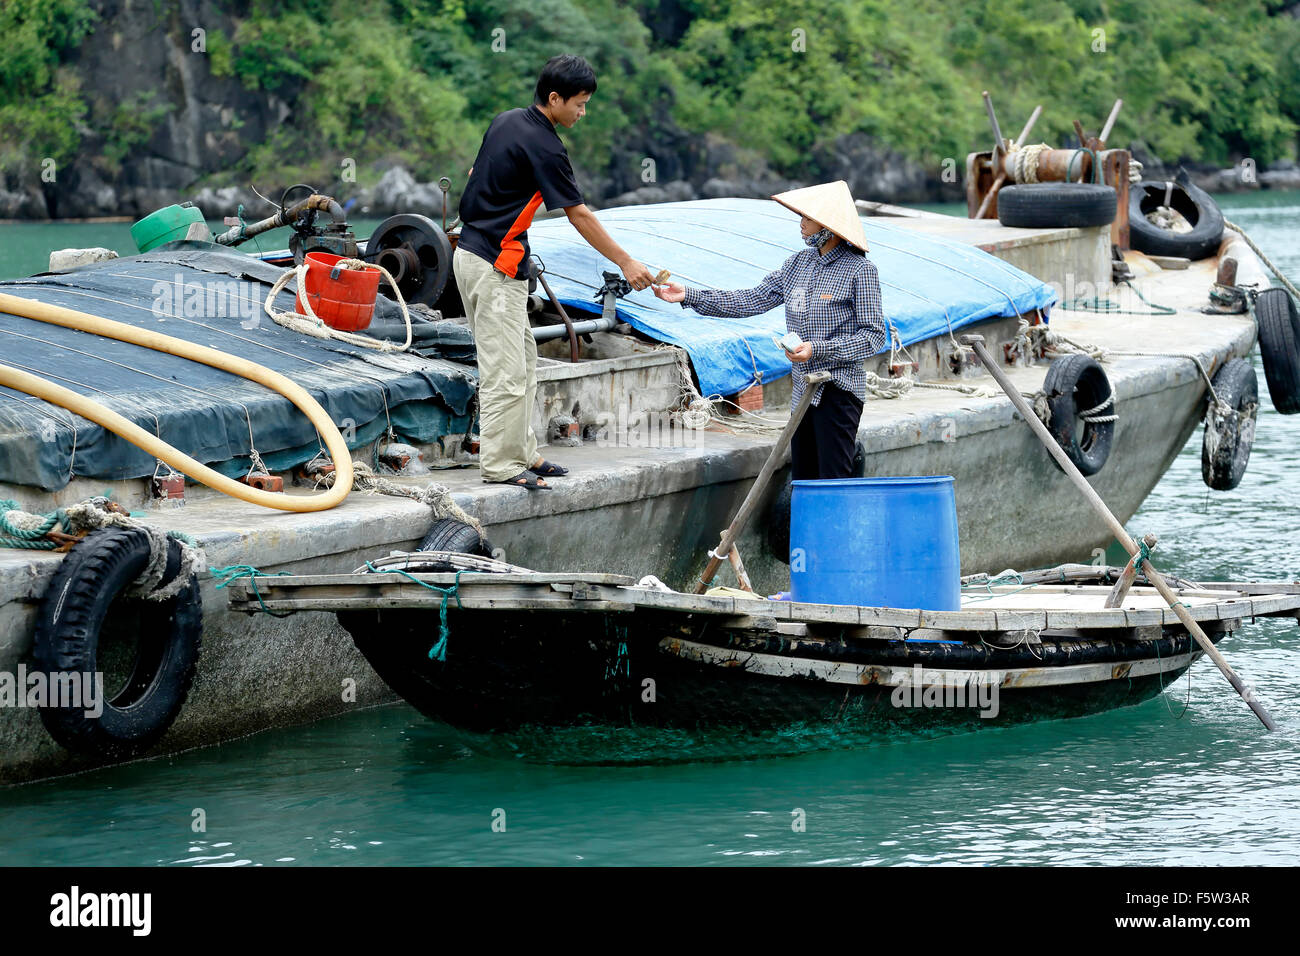 L'achat de femme l'eau douce du bateau en béton, village de pêcheurs de Vung Vieng, Ha Long Bay, Secteur de Bai Tu Long, près de Ha Long, Vietnam Banque D'Images